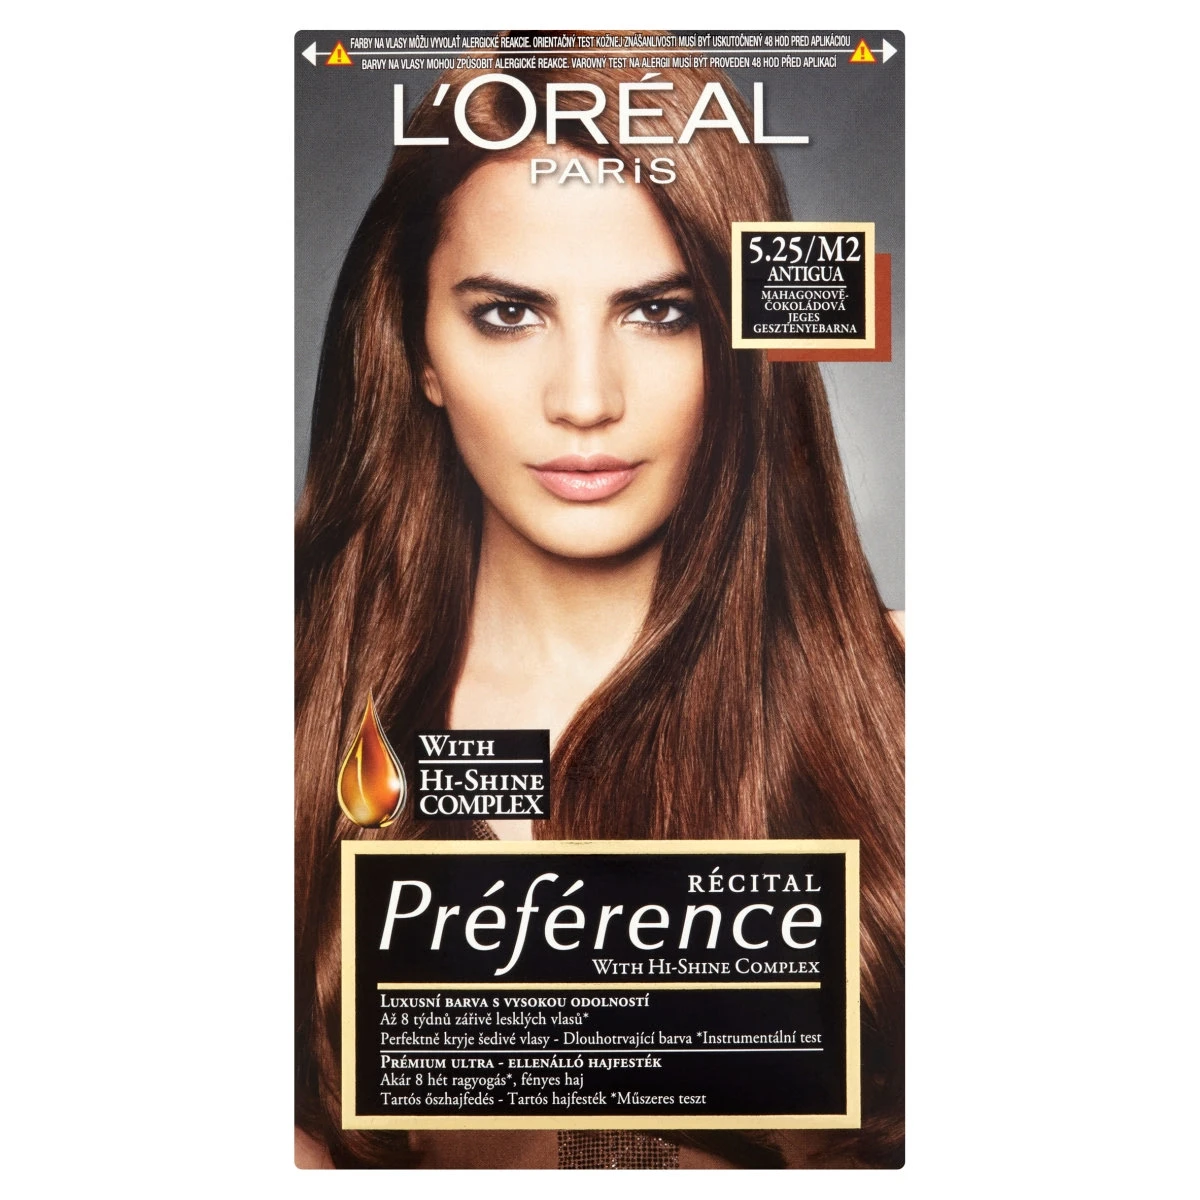 L'Oréal Paris Préférence 5.25M2 Jeges Gesztenyebarna prémium ultra ellenálló hajfesték